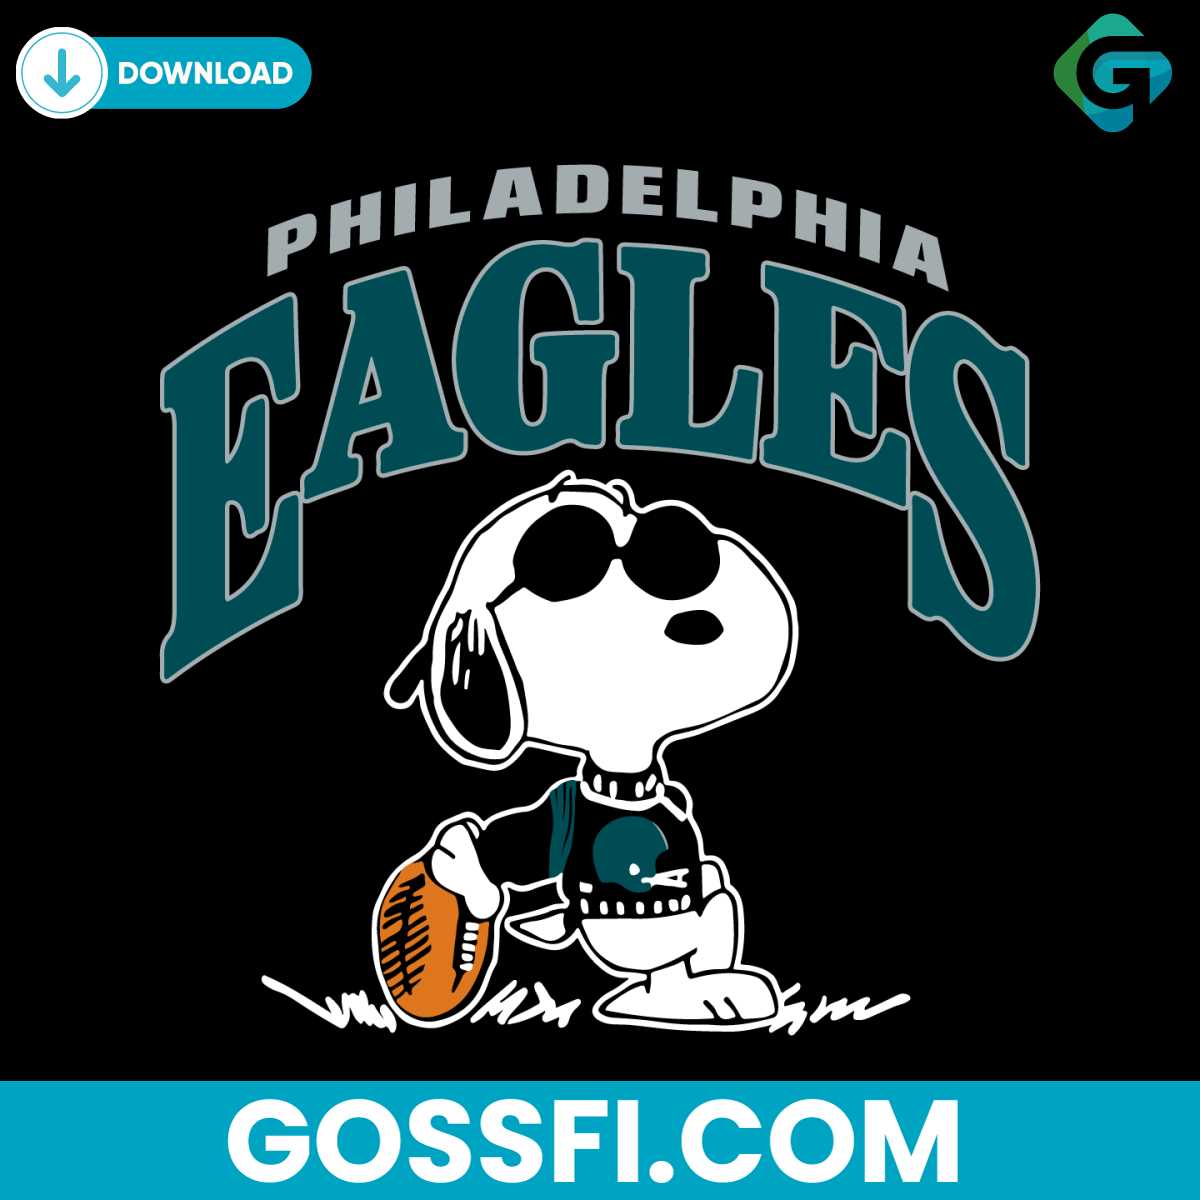 vintage-snoopy-football-philadelphia-eagles-svg